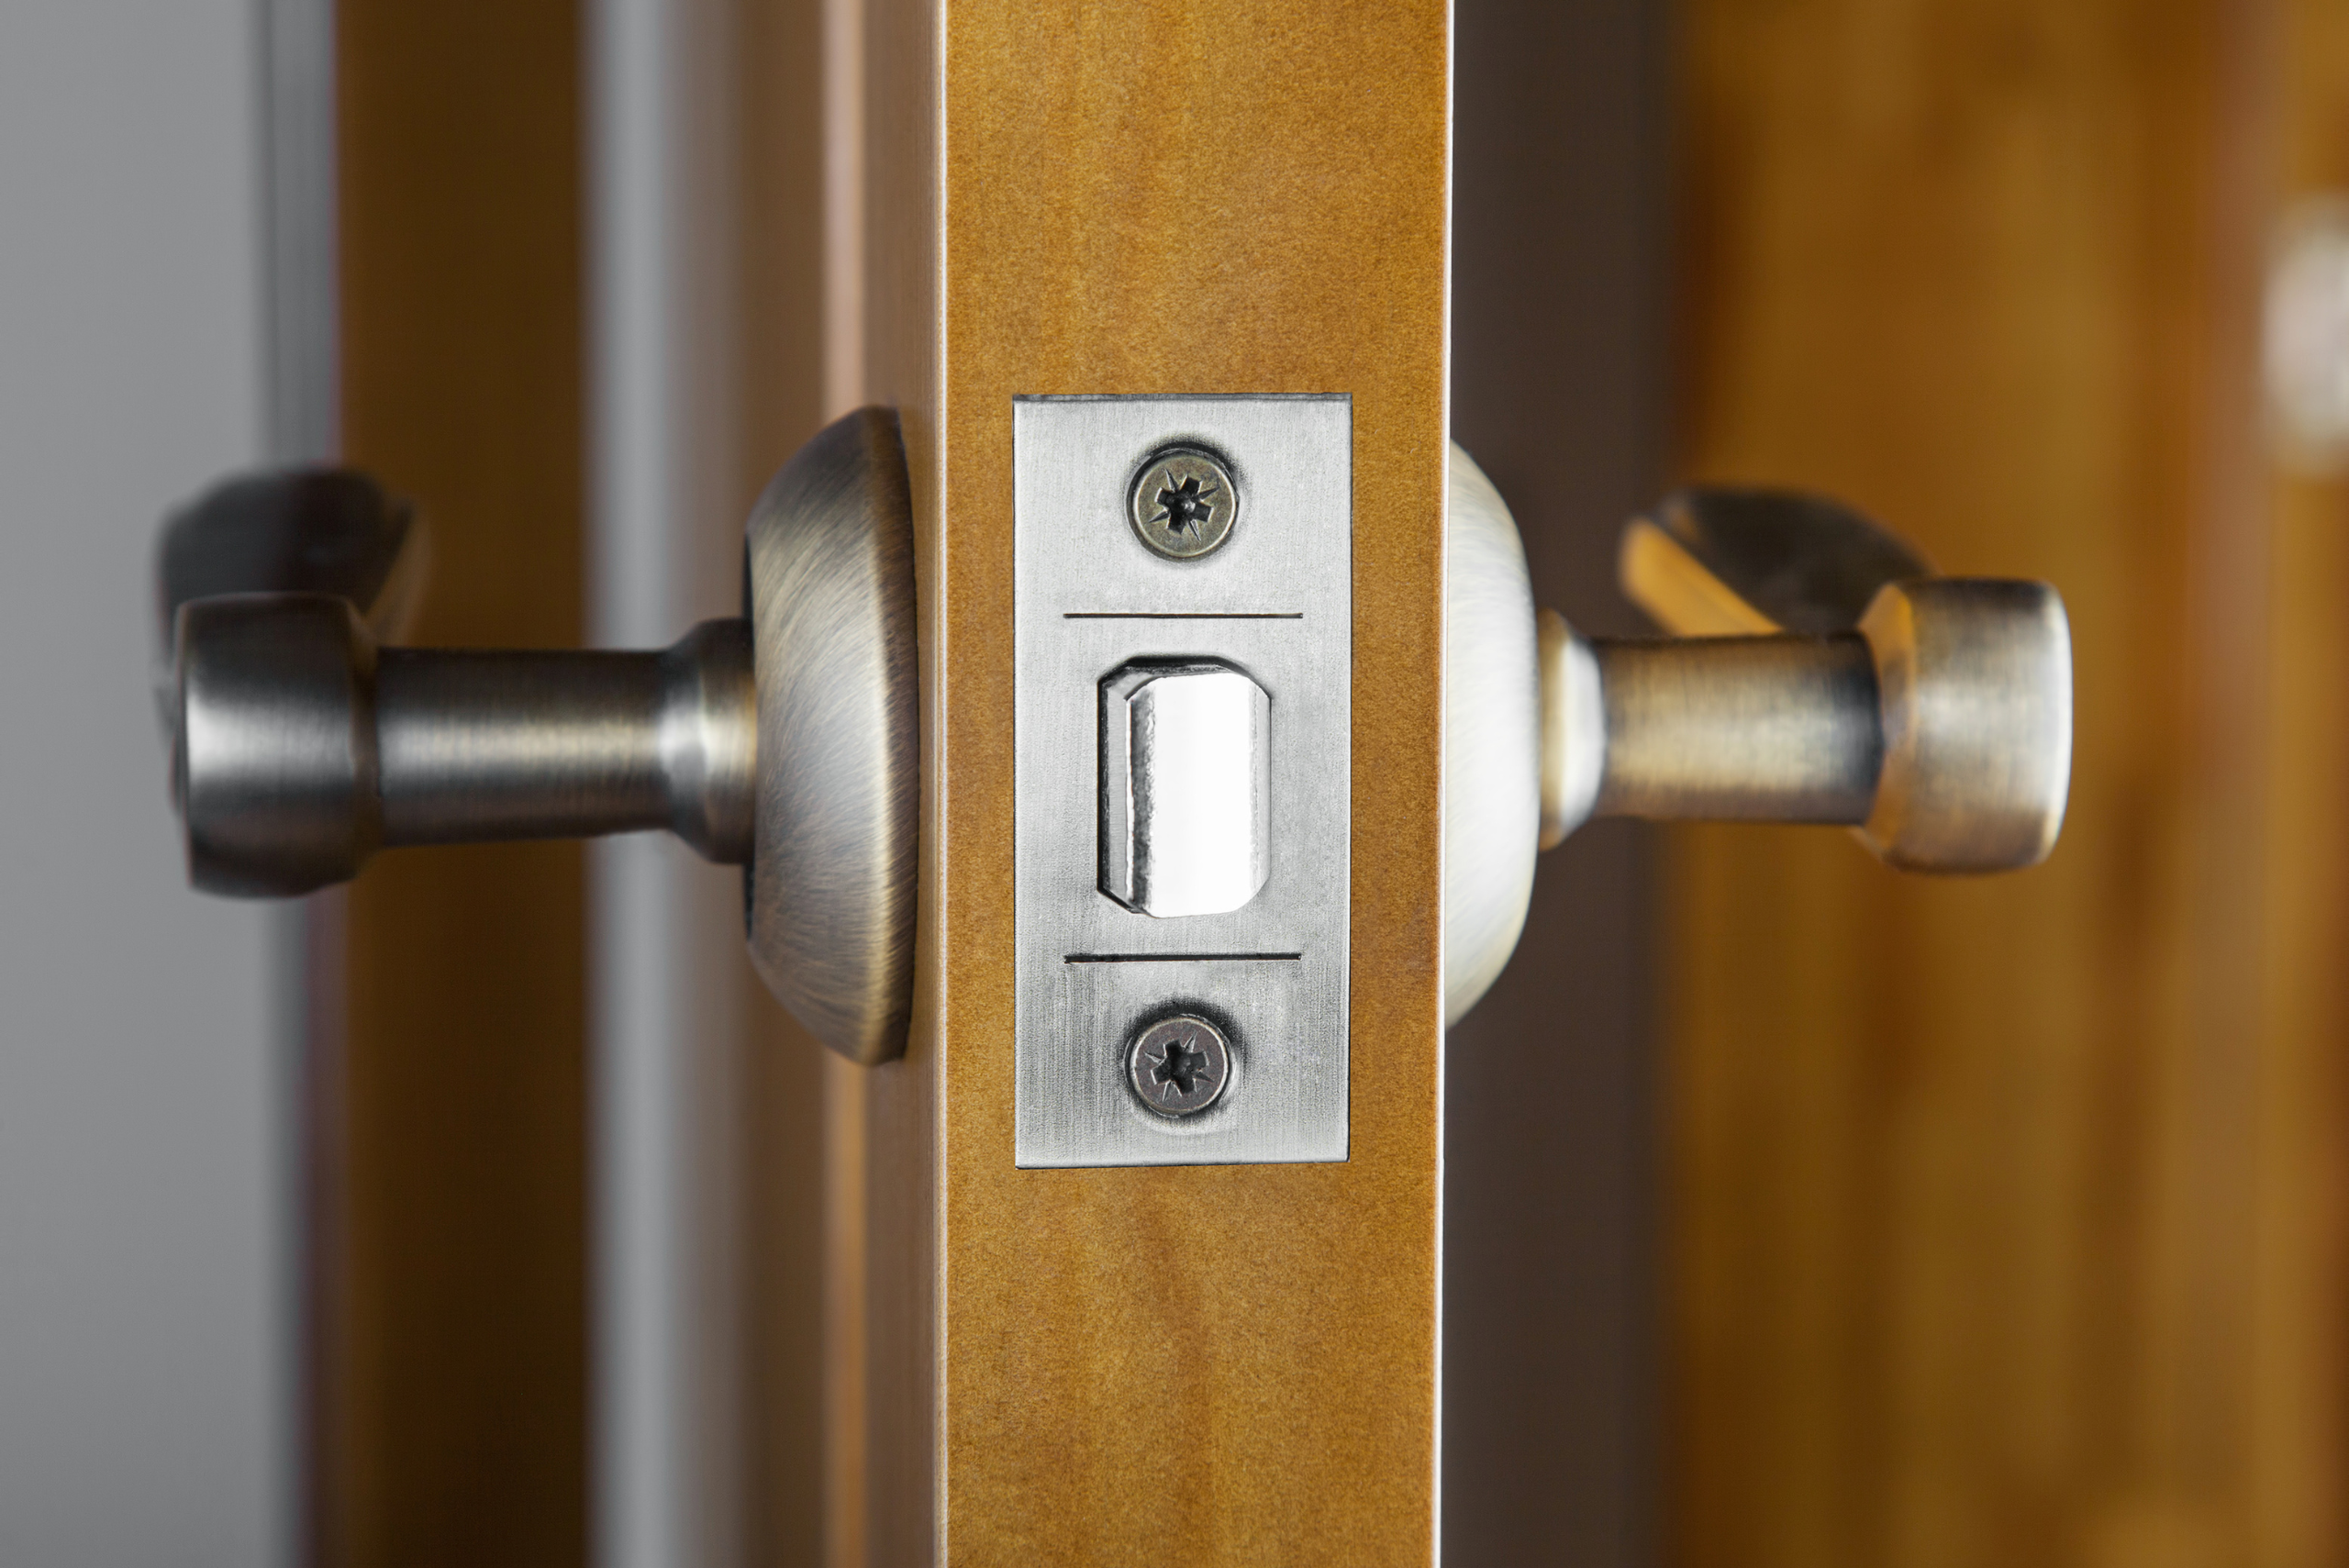 A door latch and handles.